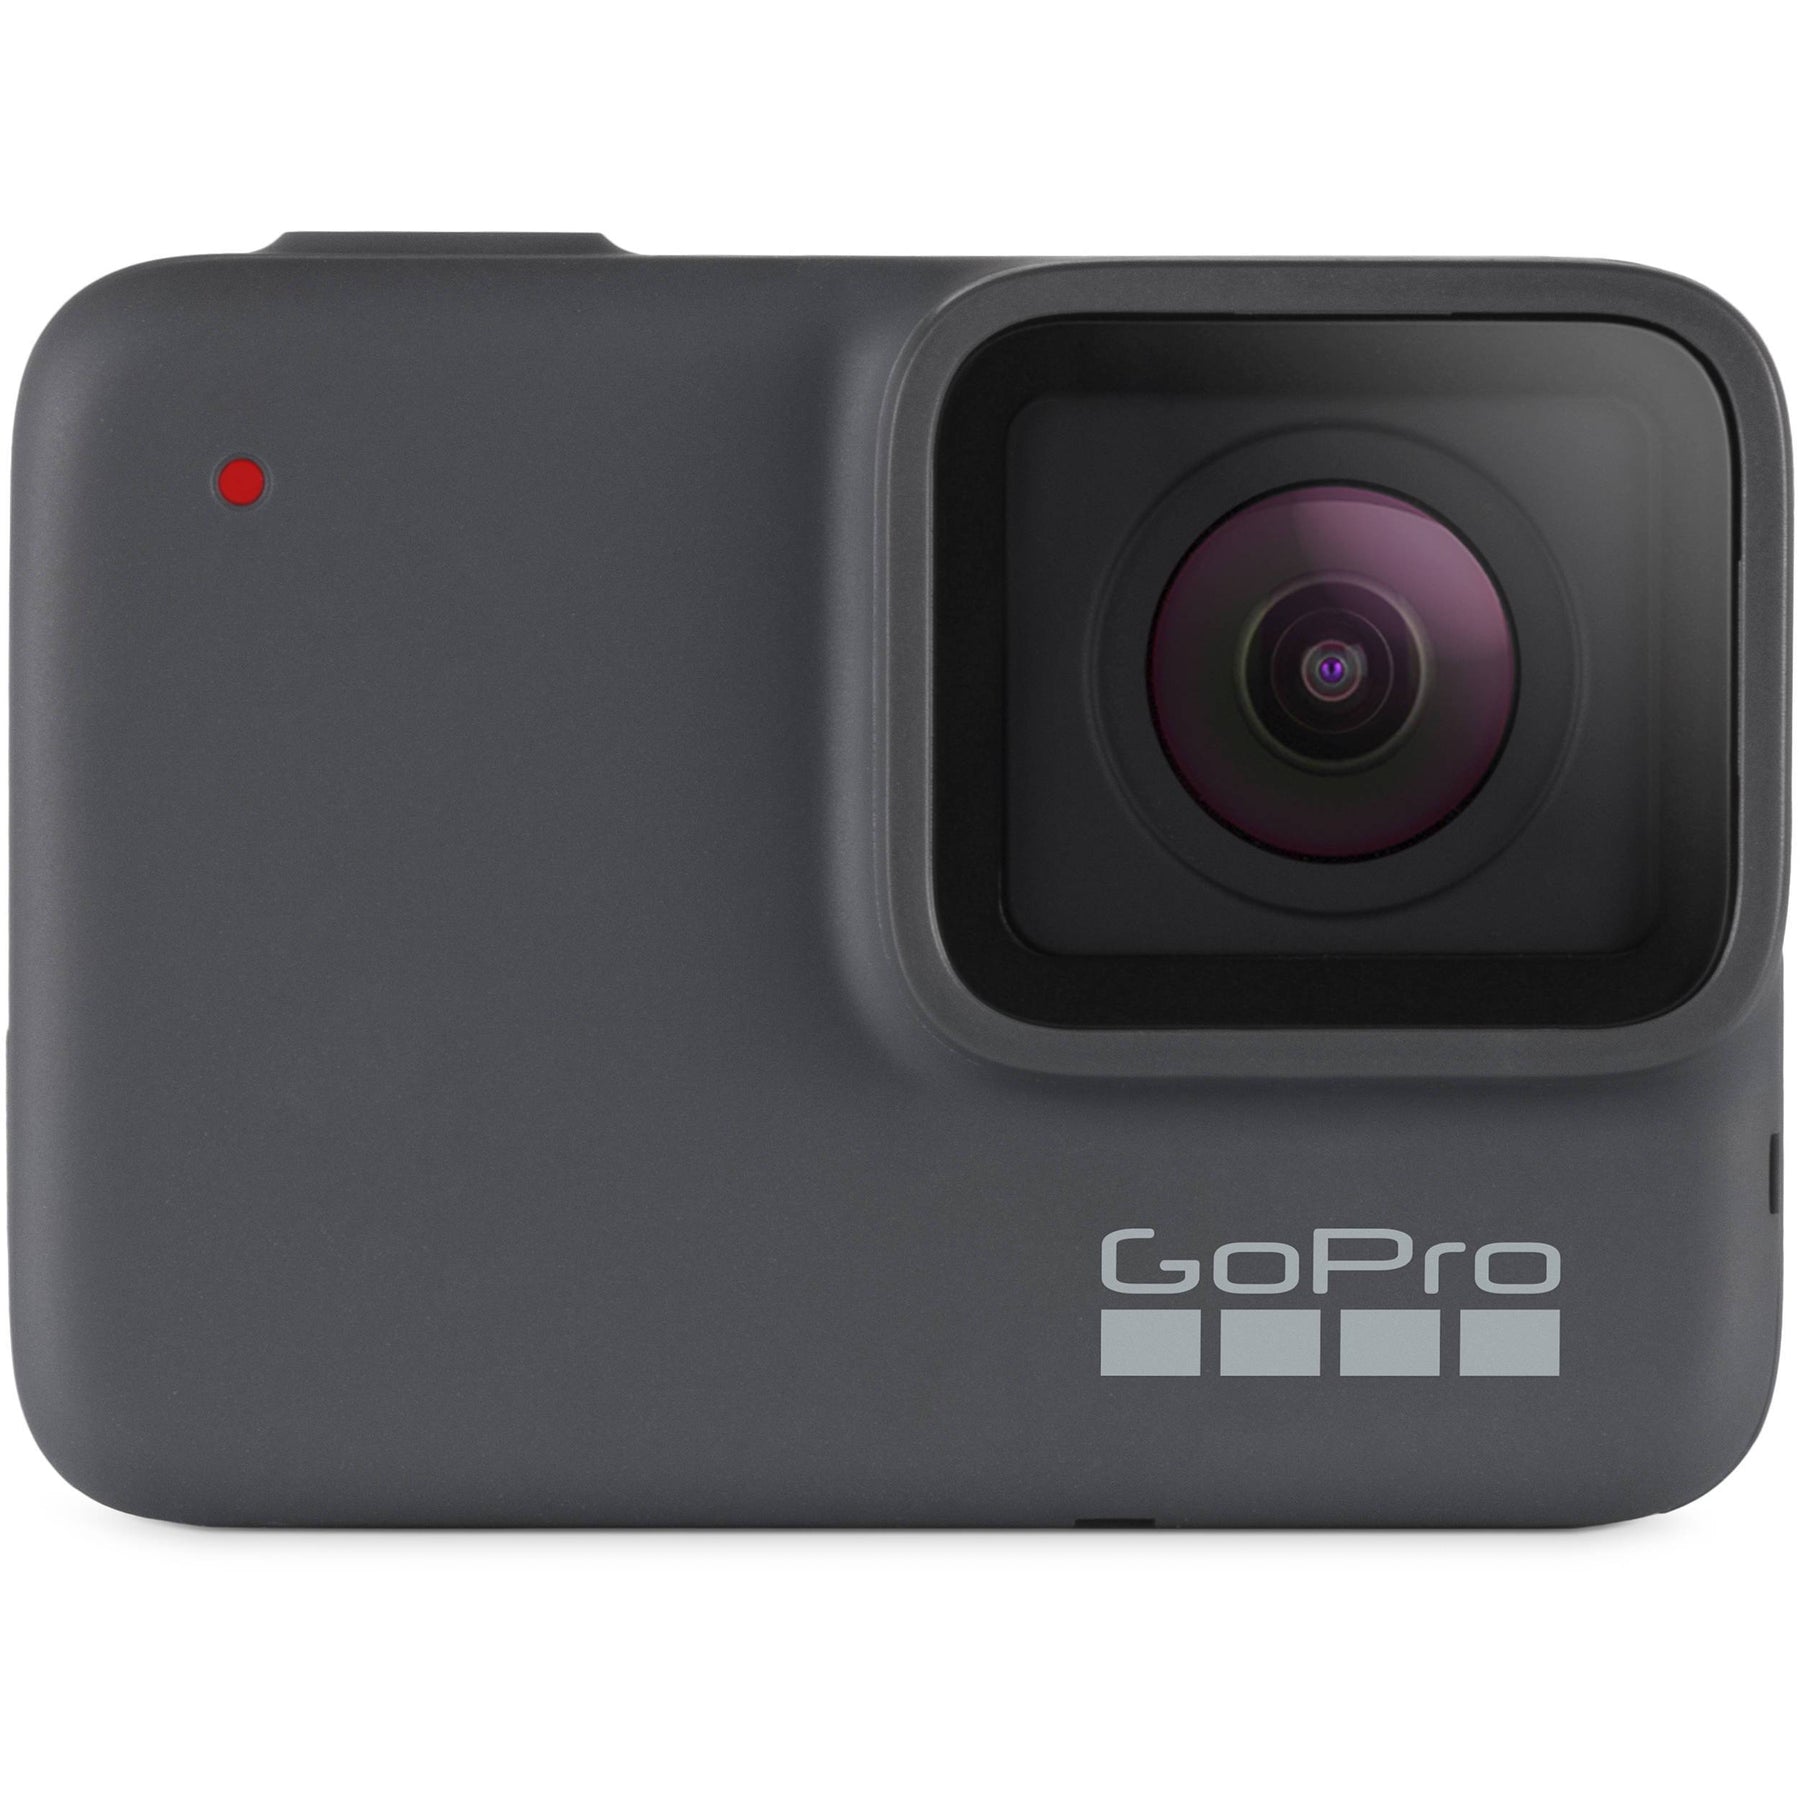 Action Cameras - GoPro Hero7 Silver Action Camera